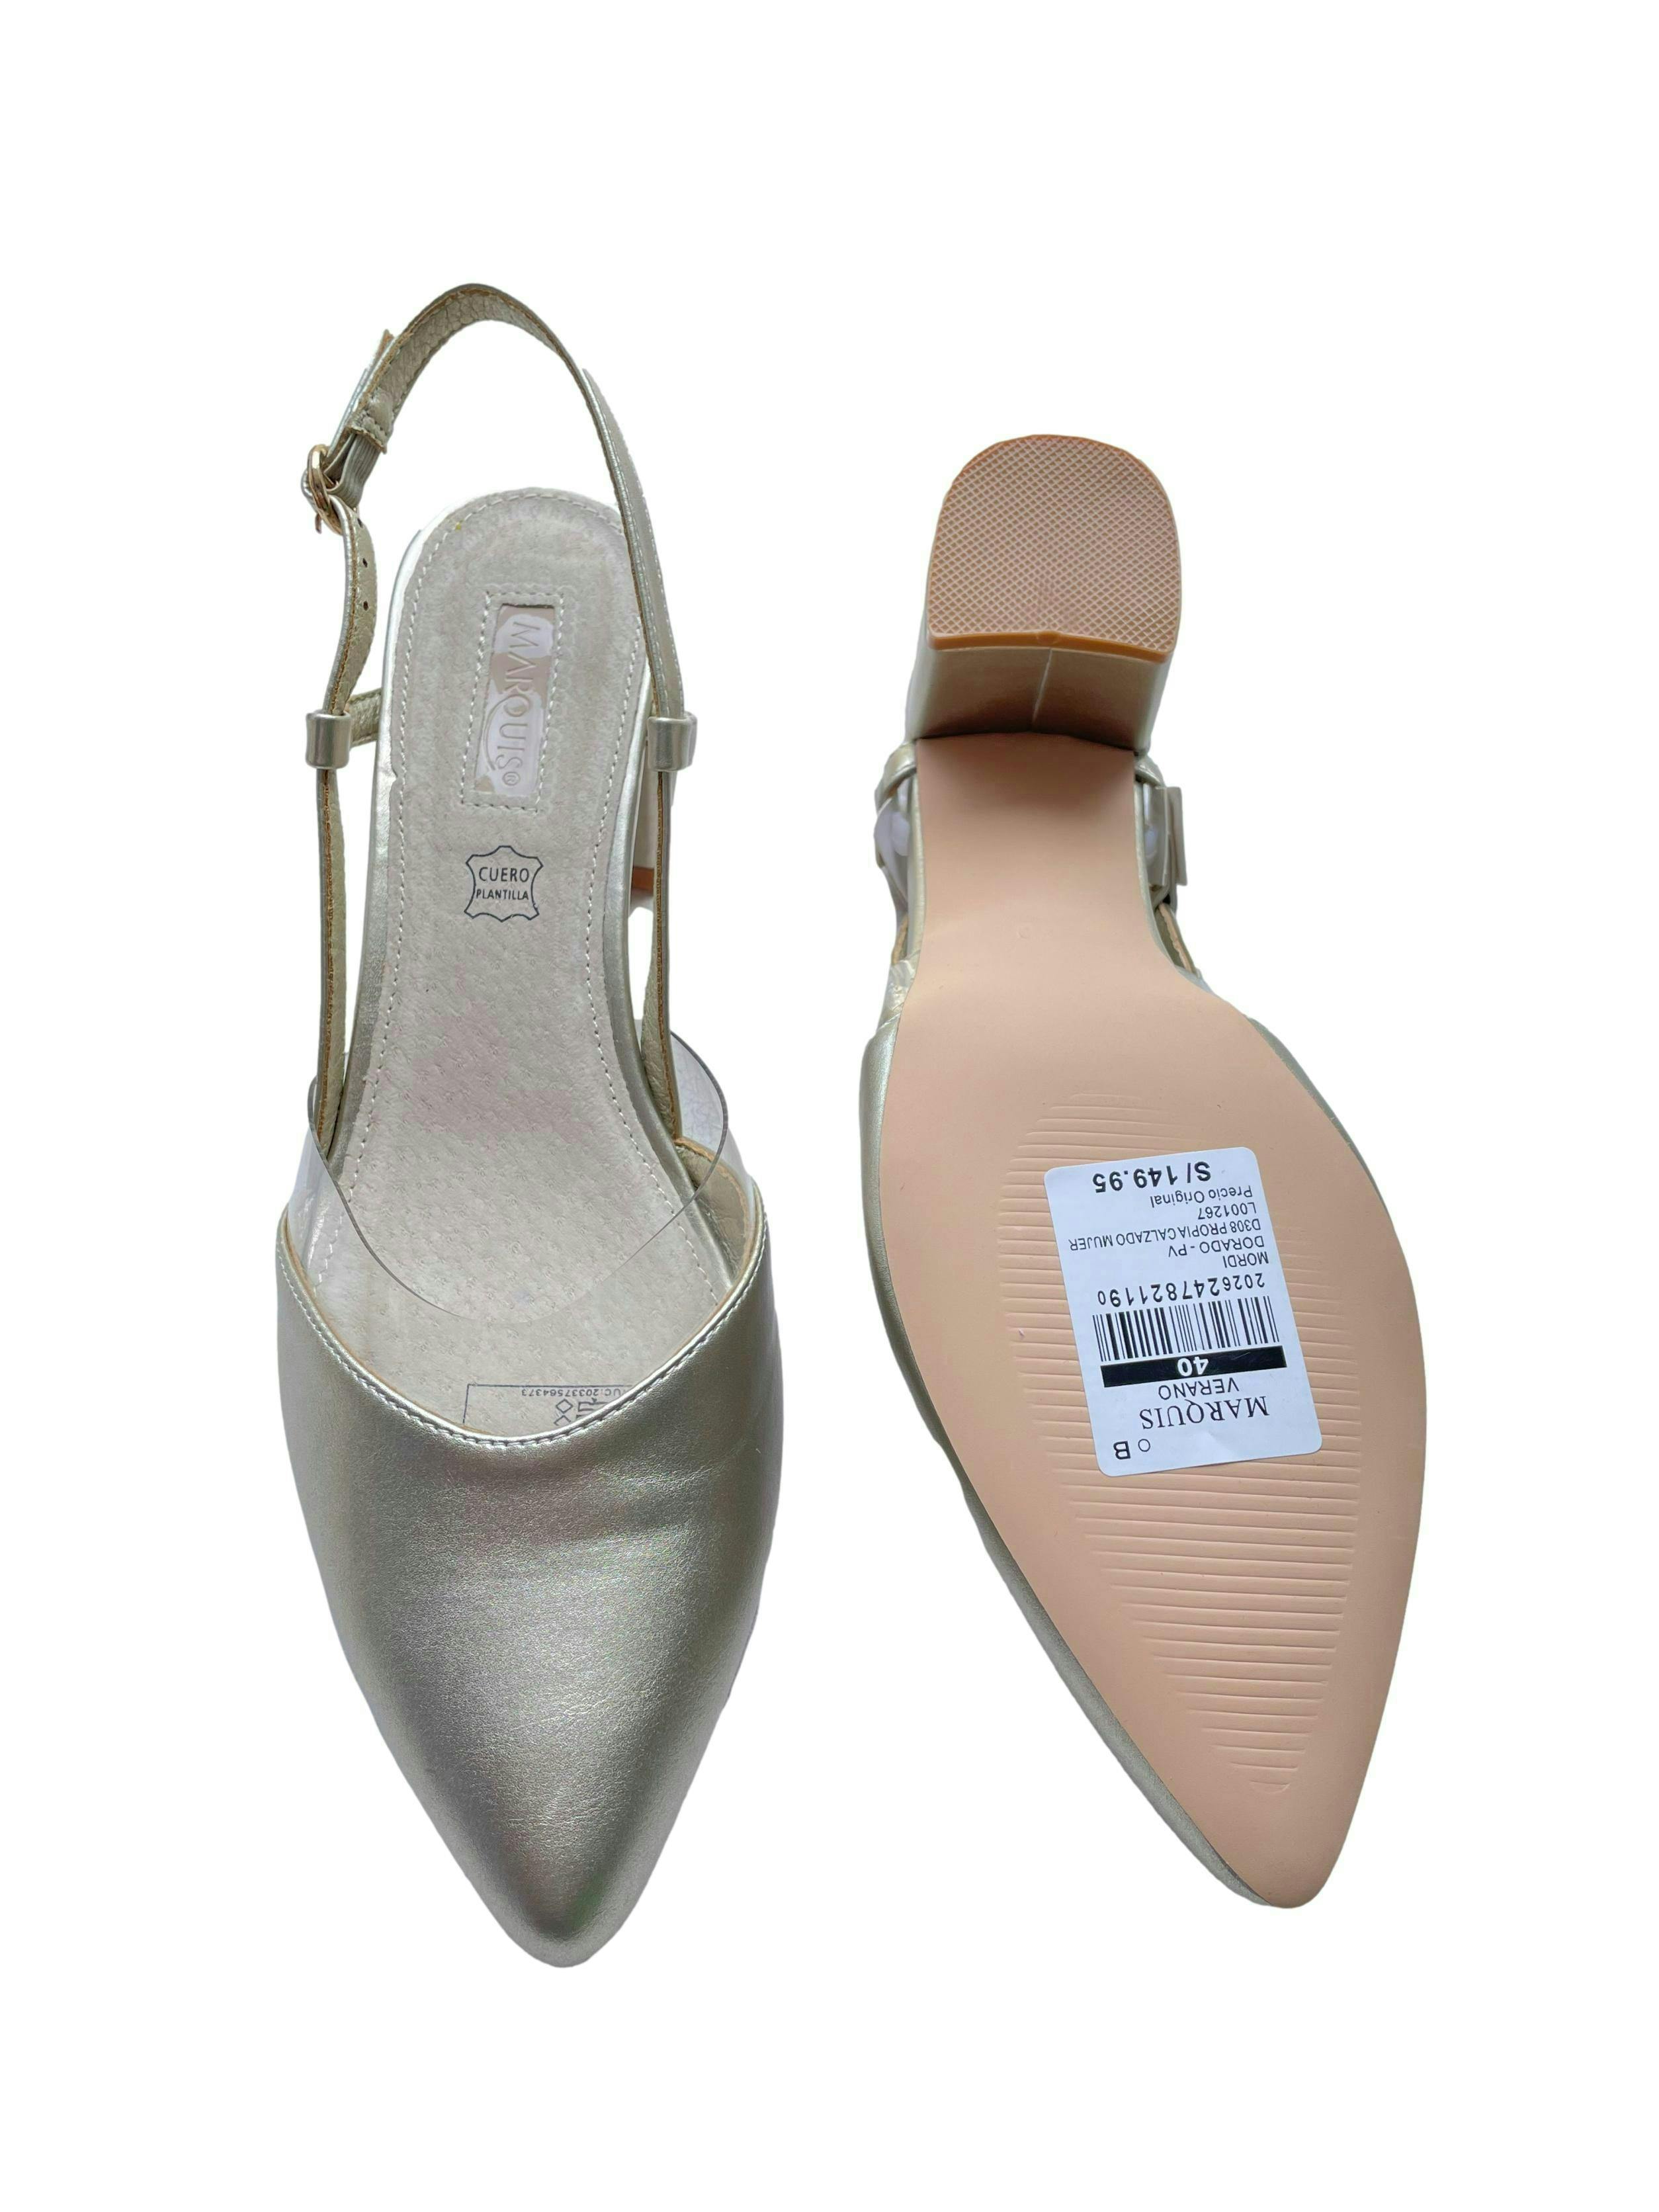 Zapatos tacos Marquis dorados con aplicación transparente, en punta, talón abierto y correa al tobillo, taco 6cm. Nuevos con funda y caja, precio original S/ 150